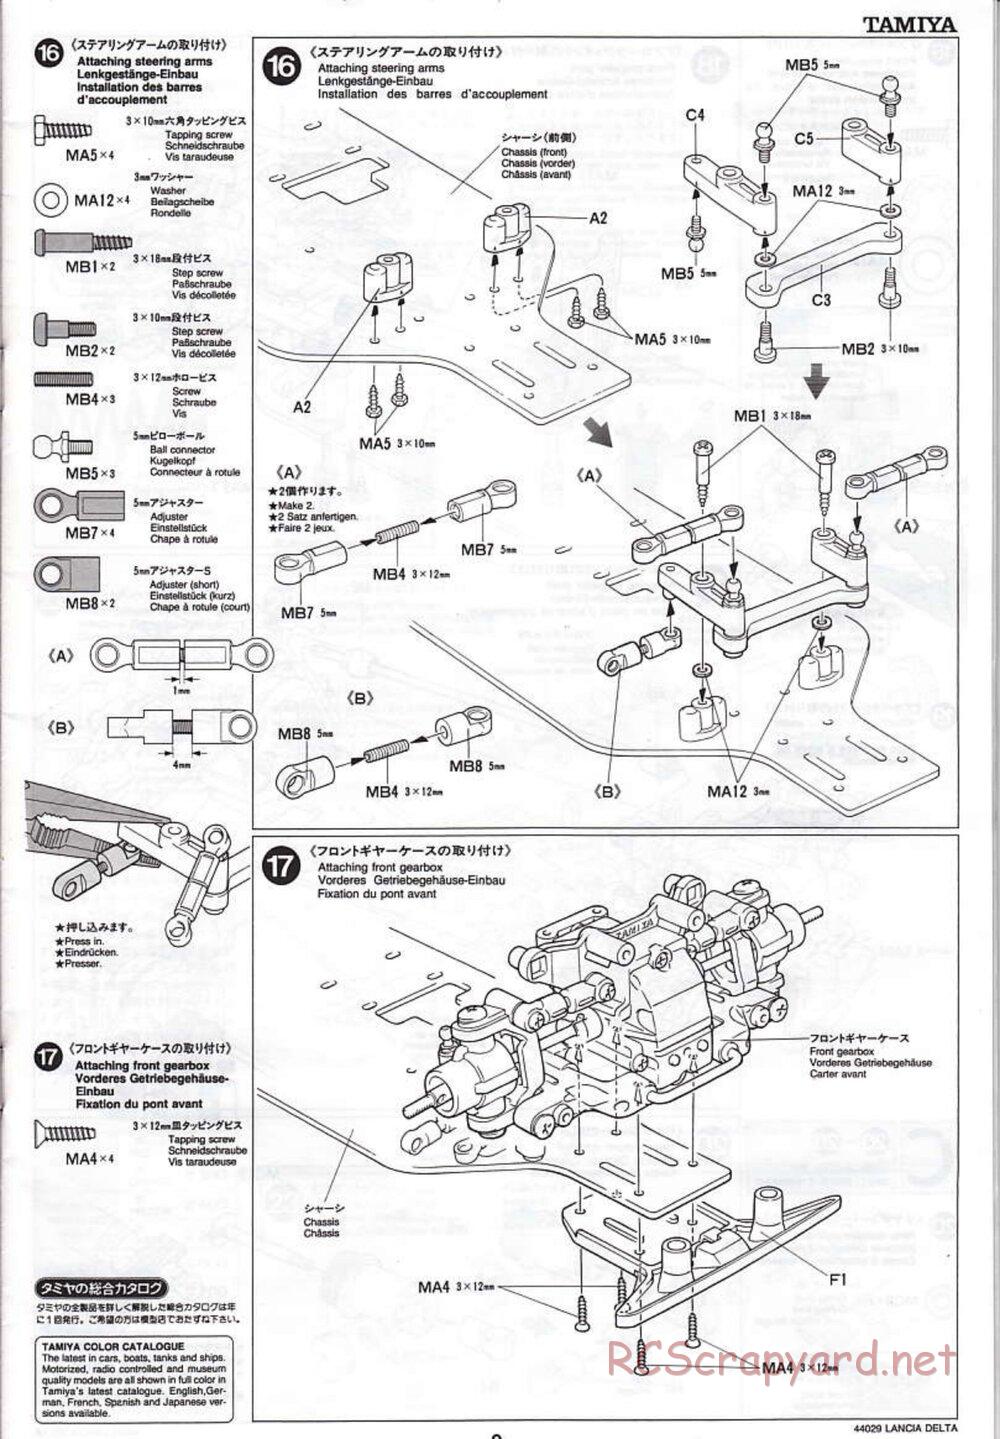 Tamiya - Lancia Delta HF Integrale - TG10 Mk.1 Chassis - Manual - Page 9